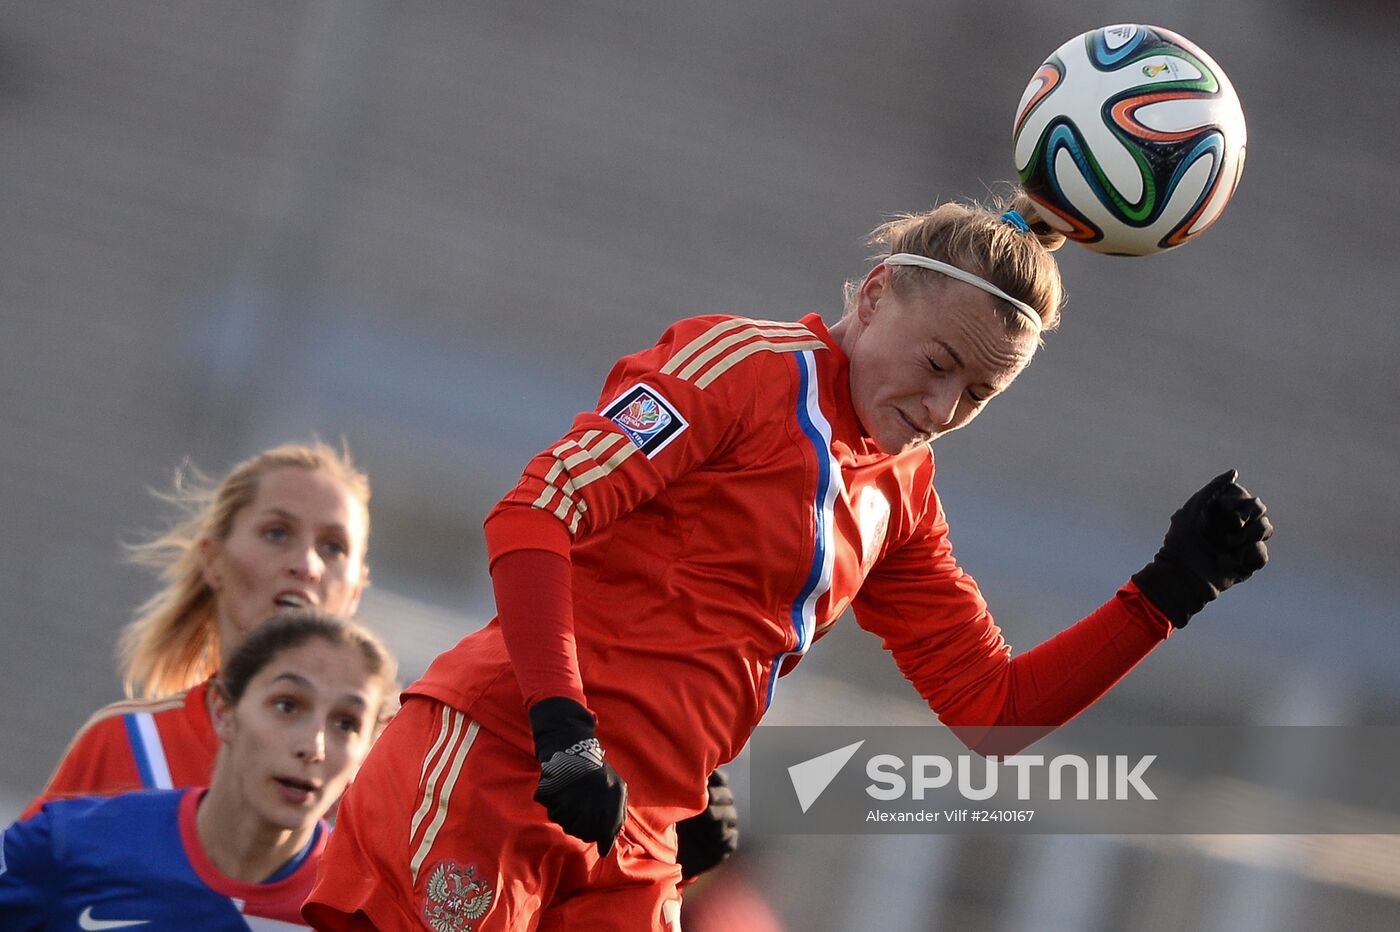 2015 FIFA Women's World Cup qualification. Russia vs. Croatia